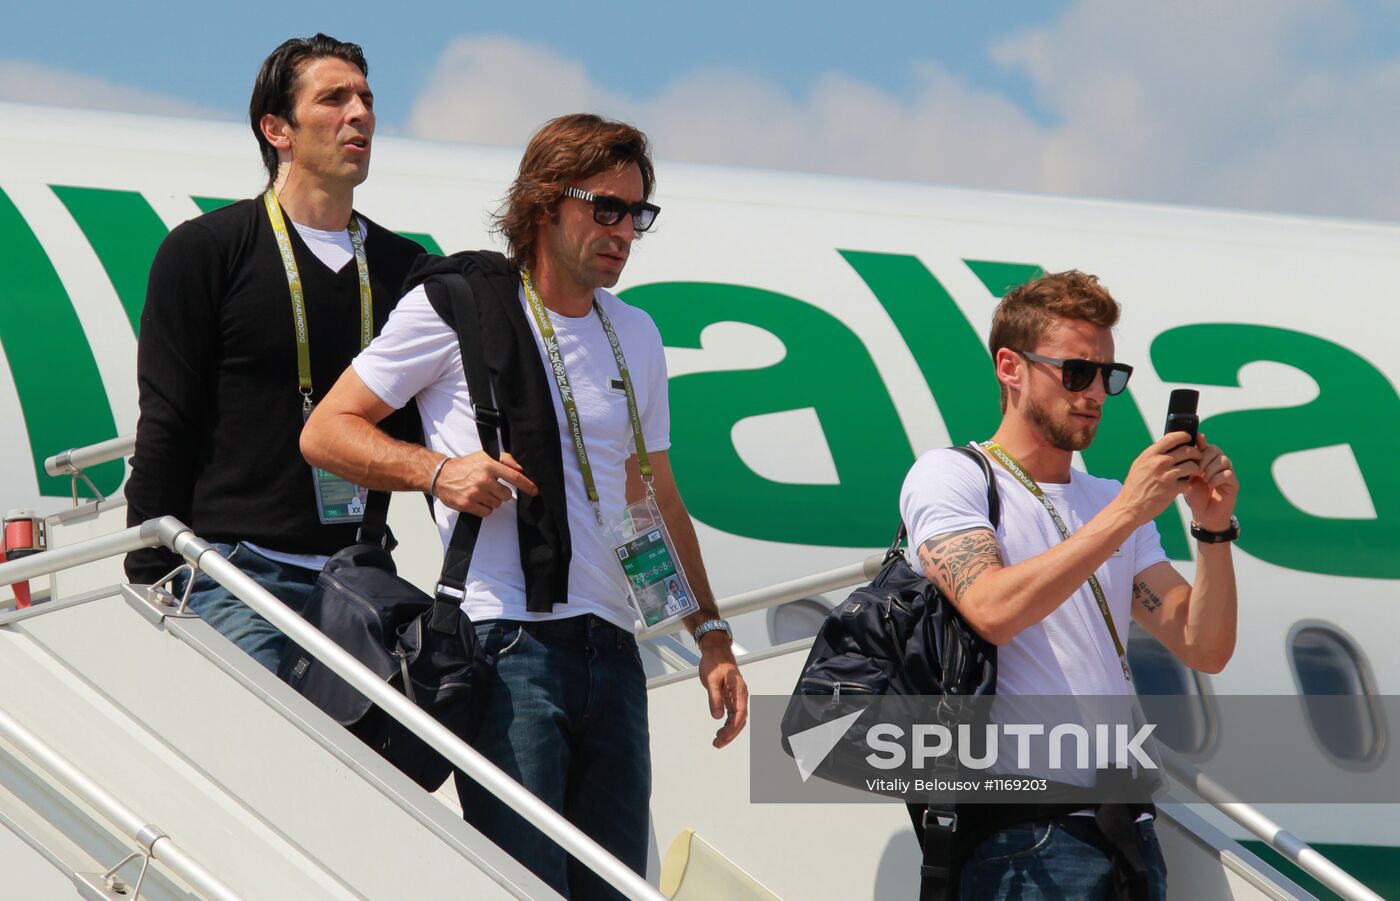 UEFA Euro 2012. Italy's squad arrives in Kiev